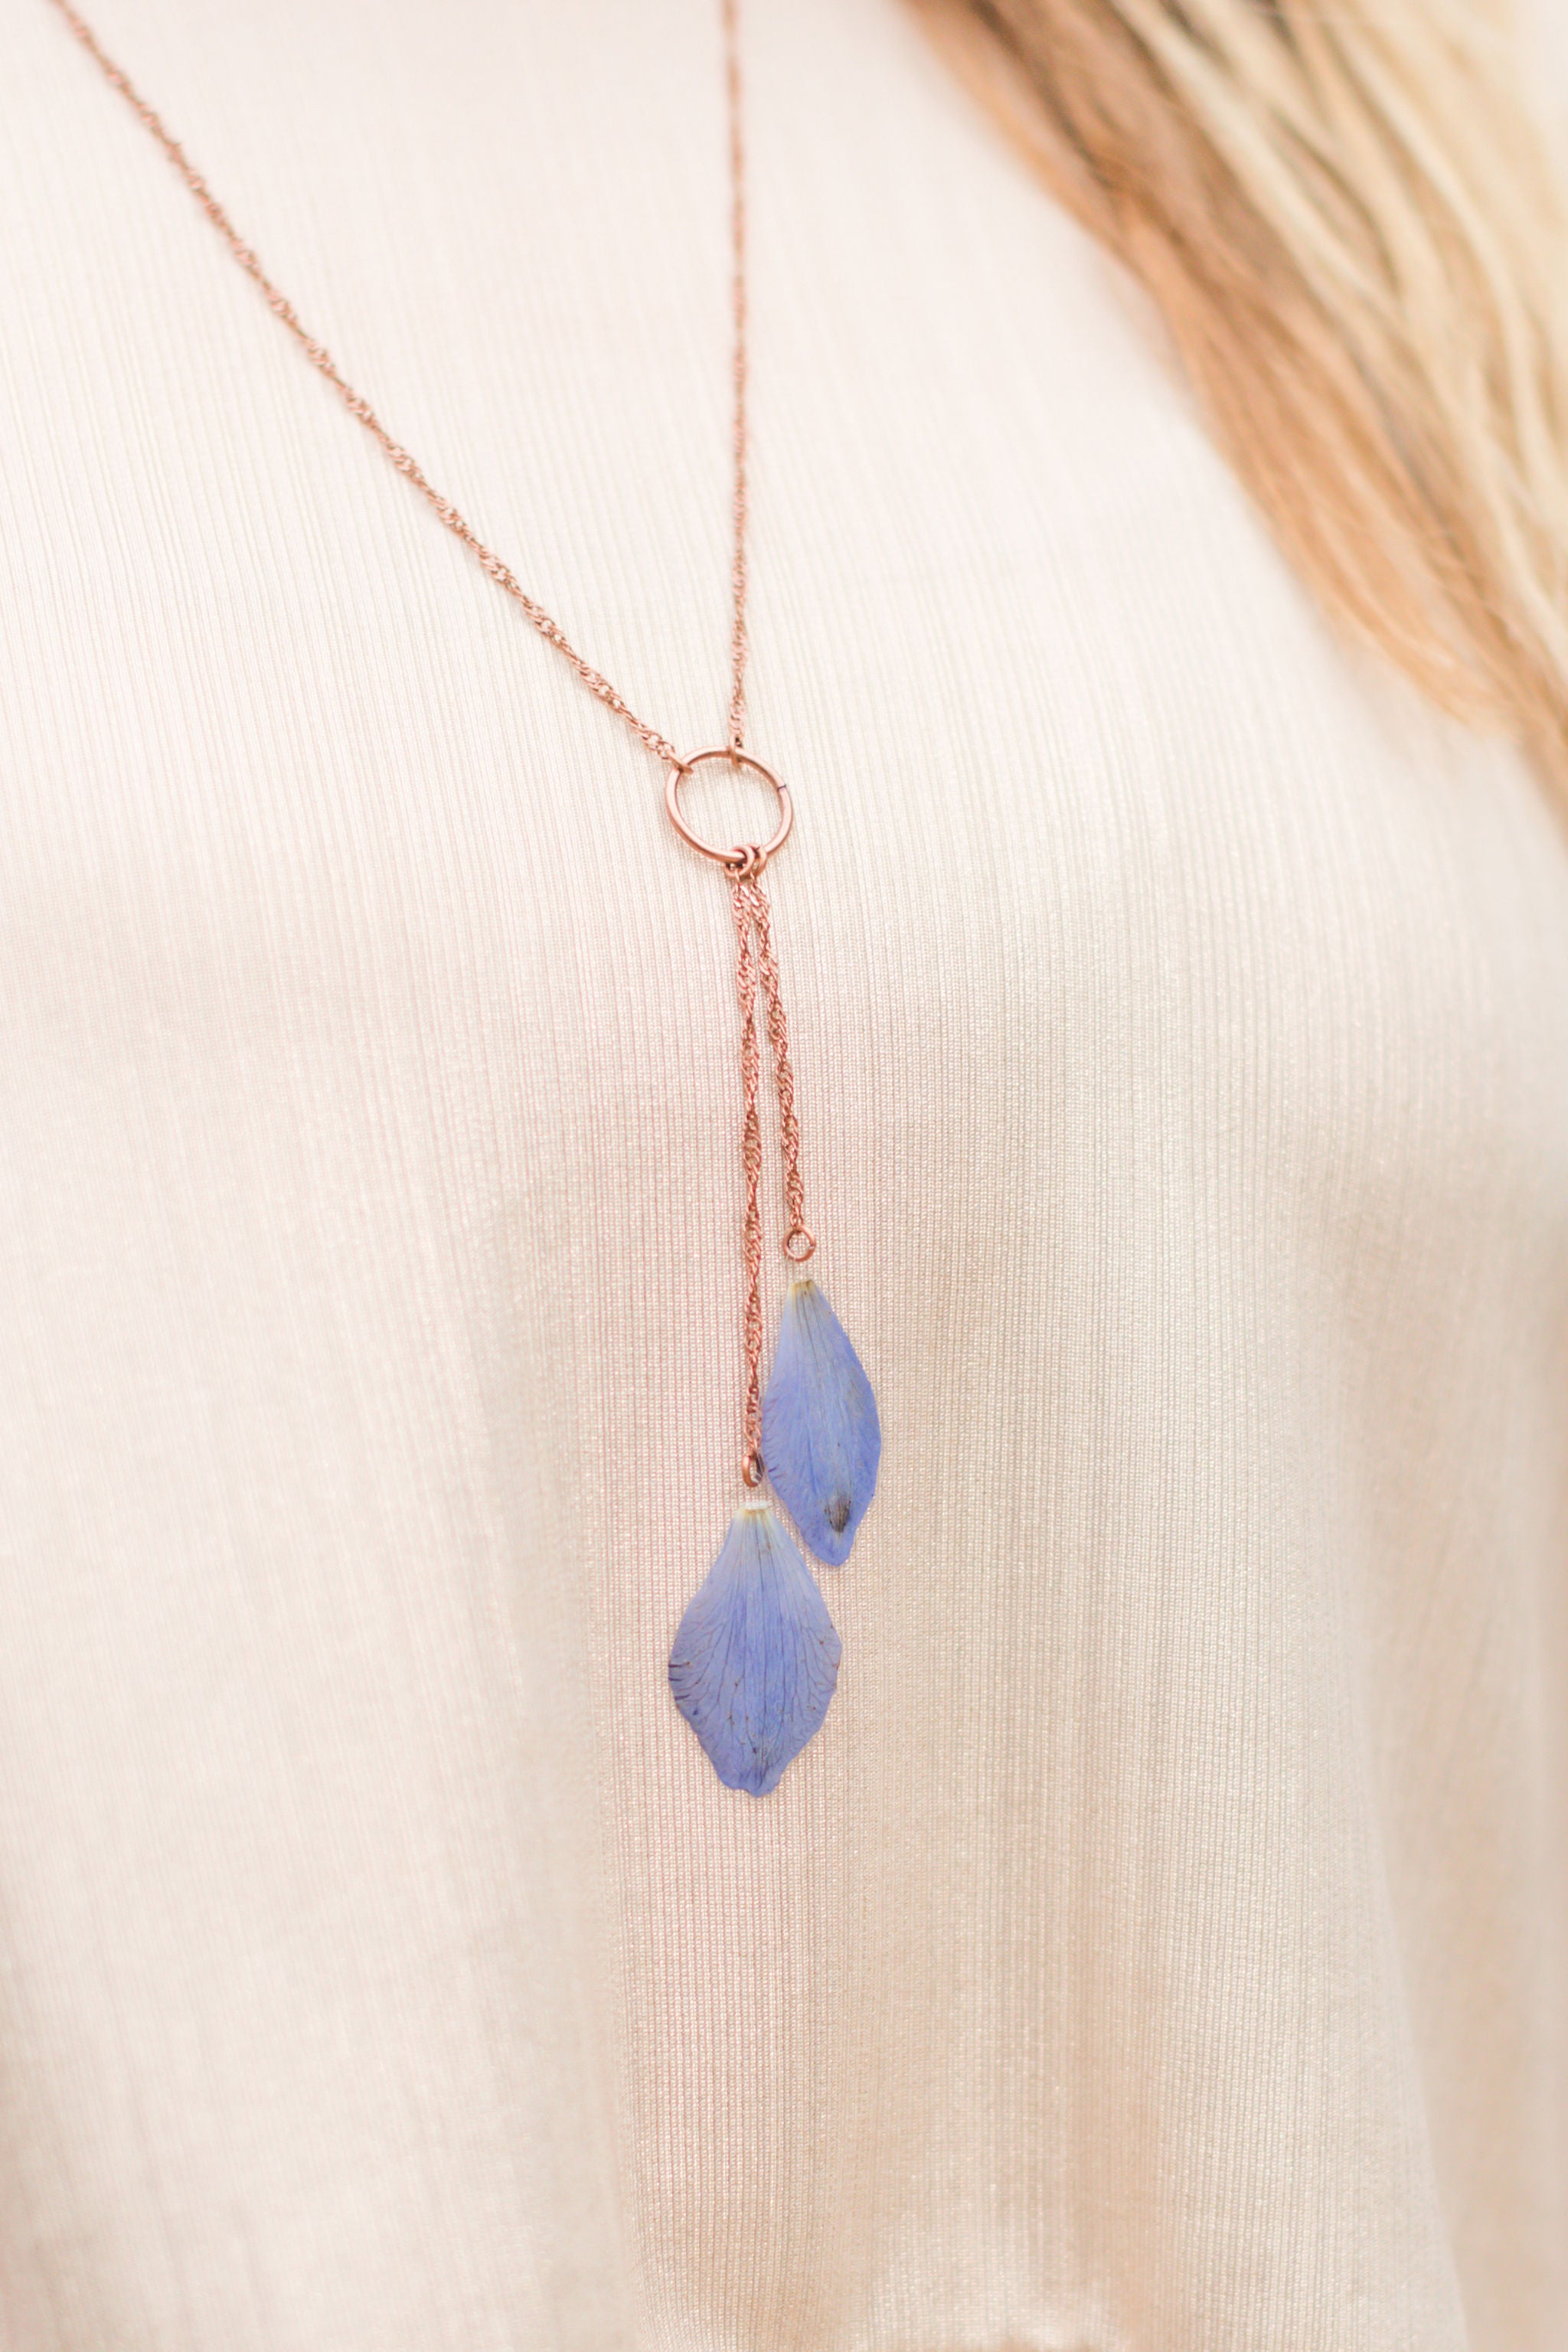 Blue Delphinium Pressed Petal Lariat Necklace